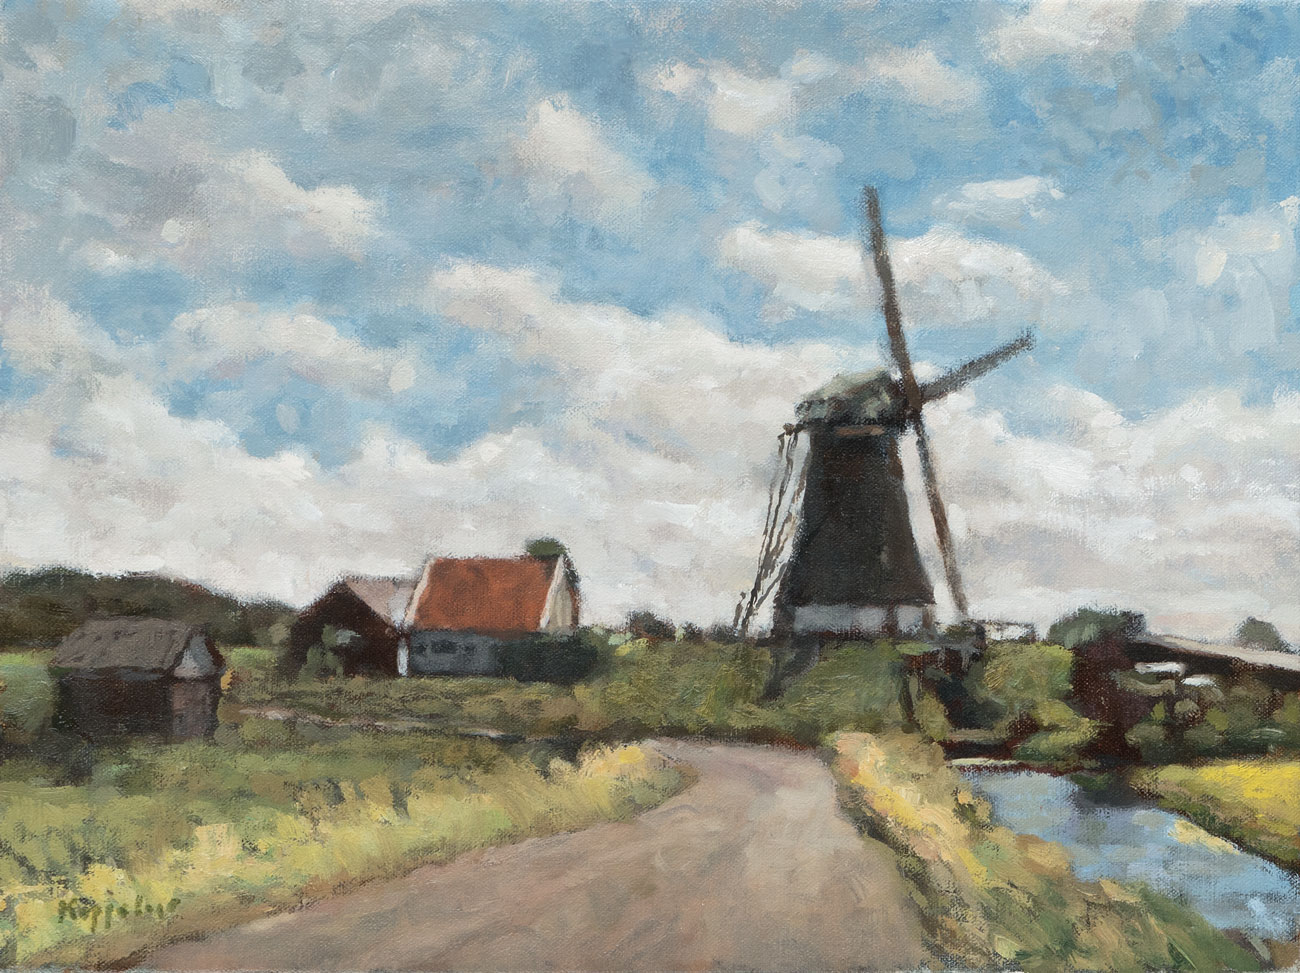 landschap: 'Poldermolen' olieverf op linnen door kunstschilder Frans Koppelaar.